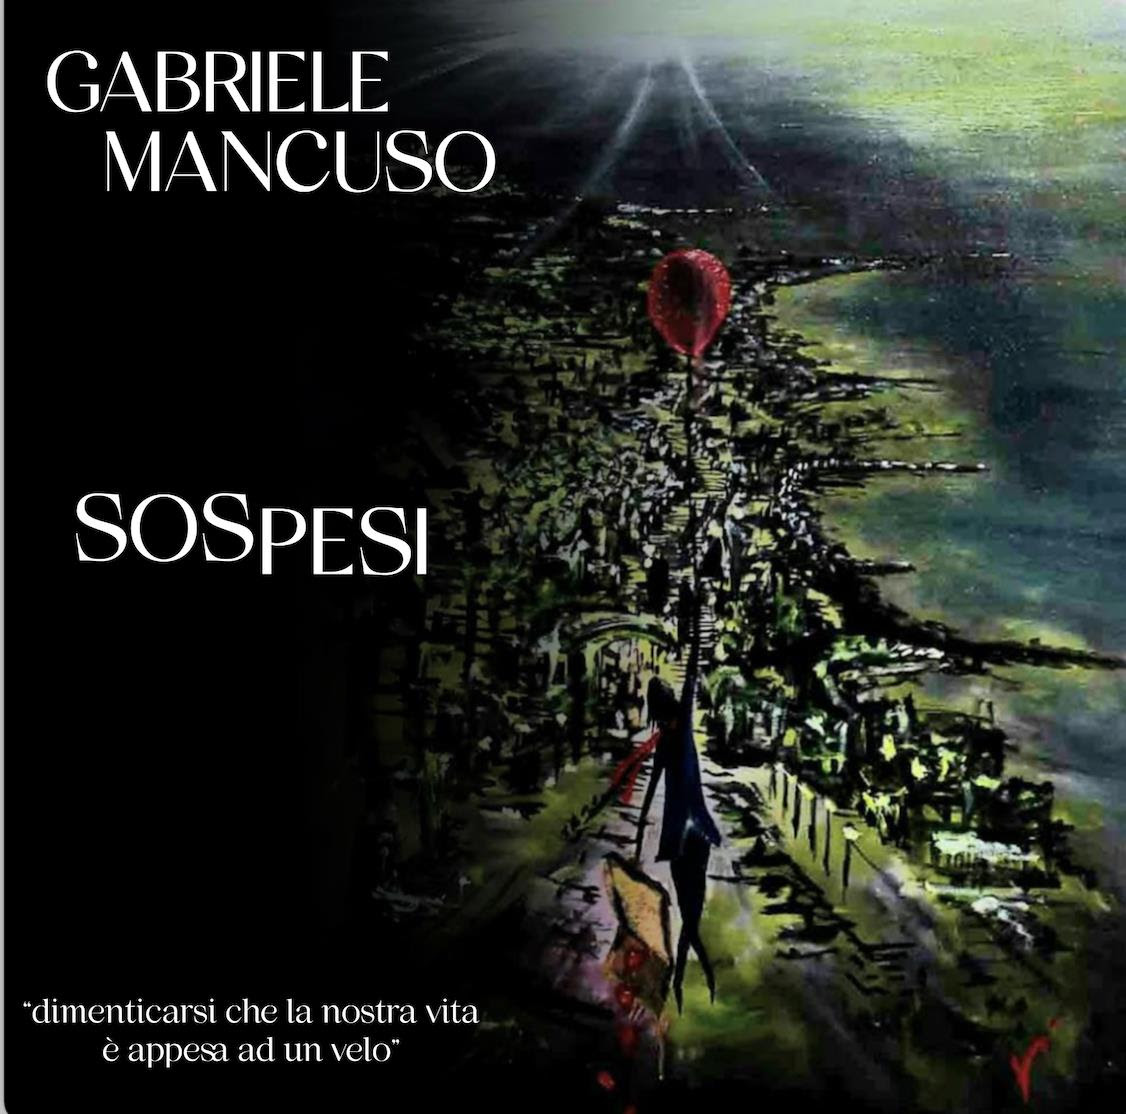 Gabriele Mancuso presenta il suo nuovo singolo "Sospesi", in pubblicazione l'8 Aprile 2022